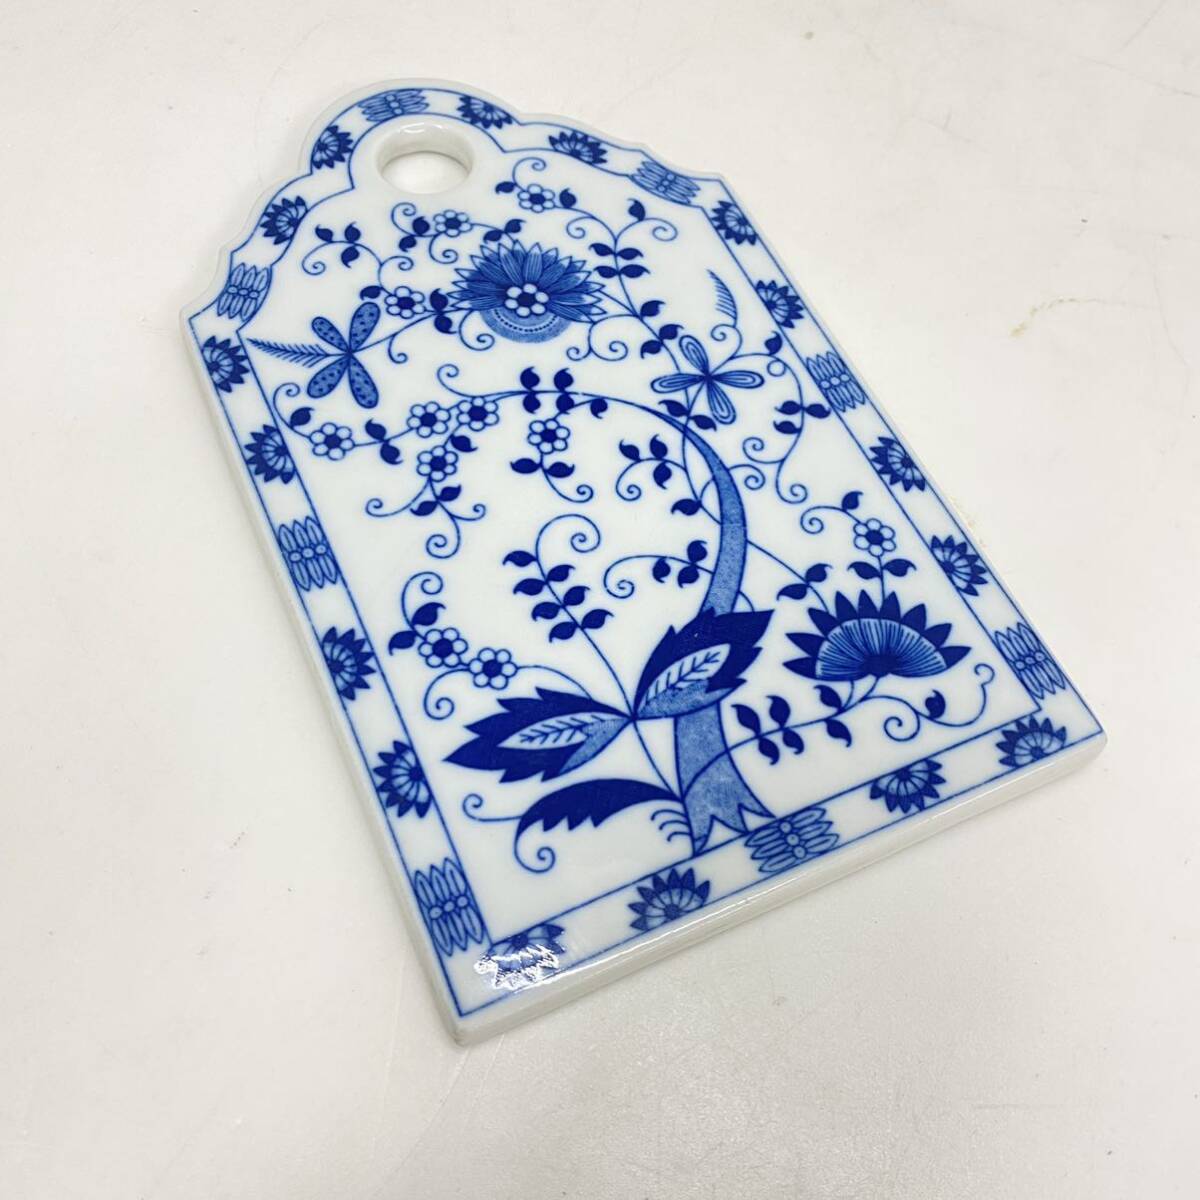 622 керамика производства сыр панель коврик для посуды закуска tray голубой oni on Europe. симпатичный . кимоно керамика растения узор б/у товар 